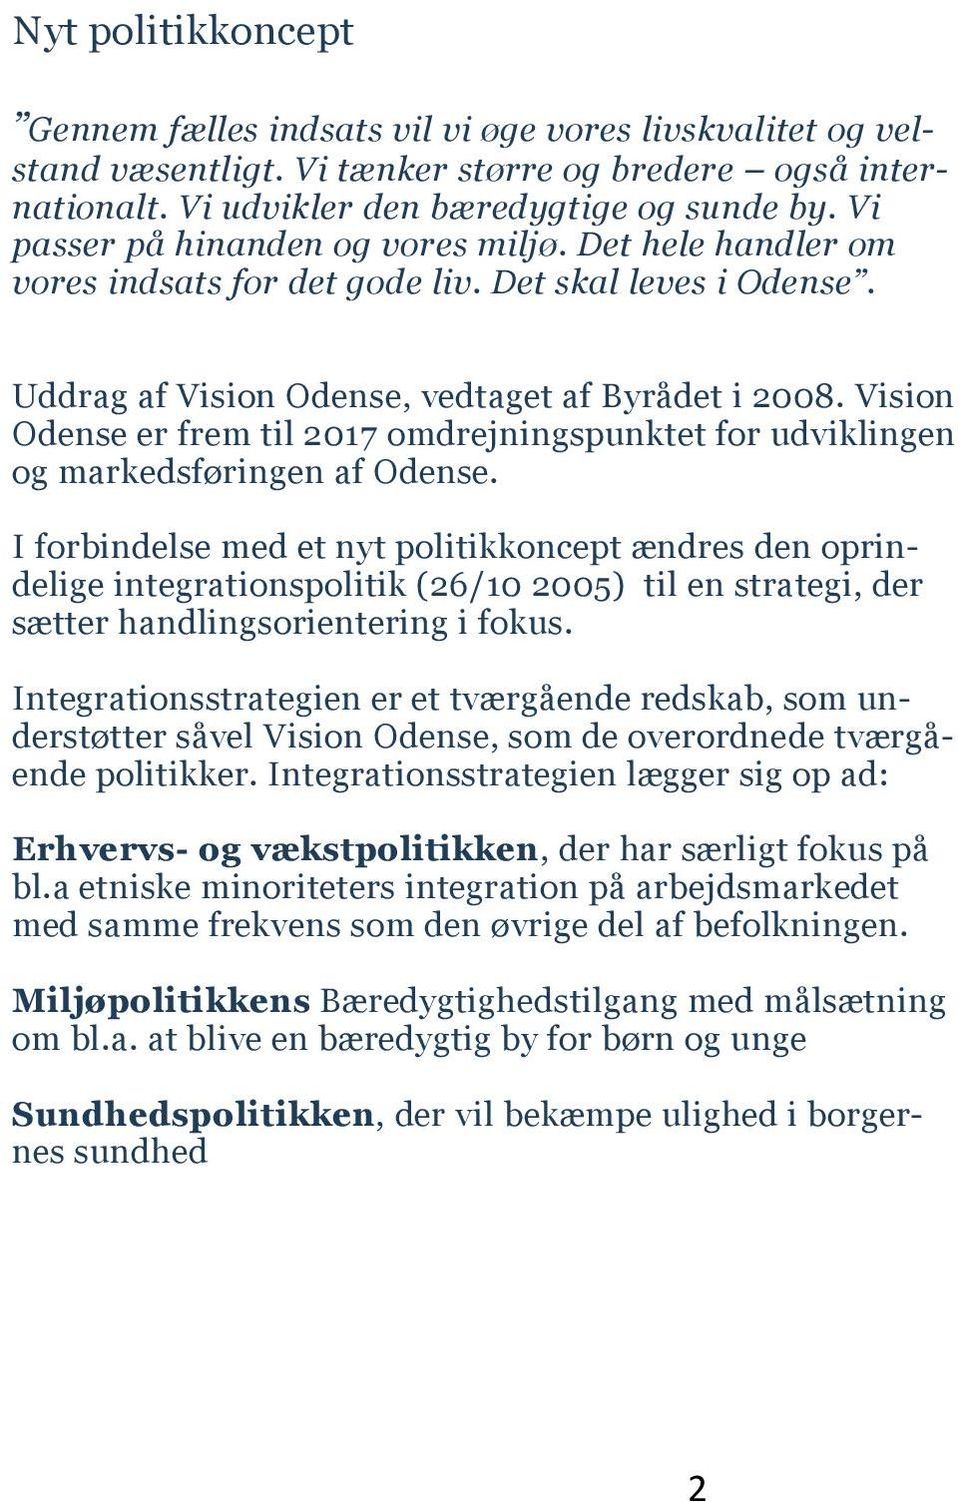 Vision Odense er frem til 2017 omdrejningspunktet for udviklingen og markedsføringen af Odense.